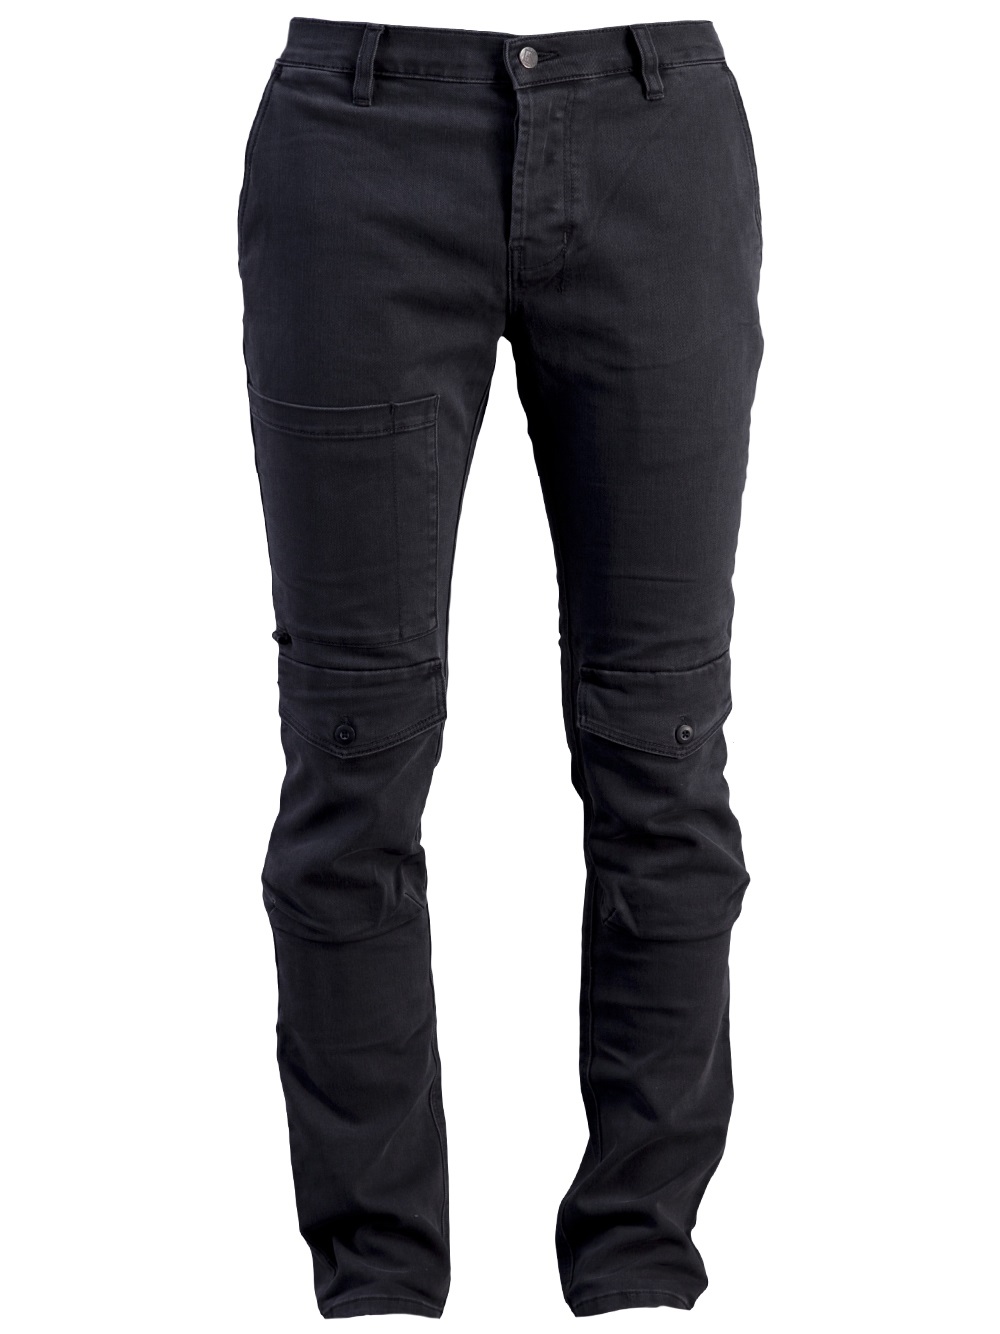 Lyst - Ksubi Cargo Jean in Black for Men